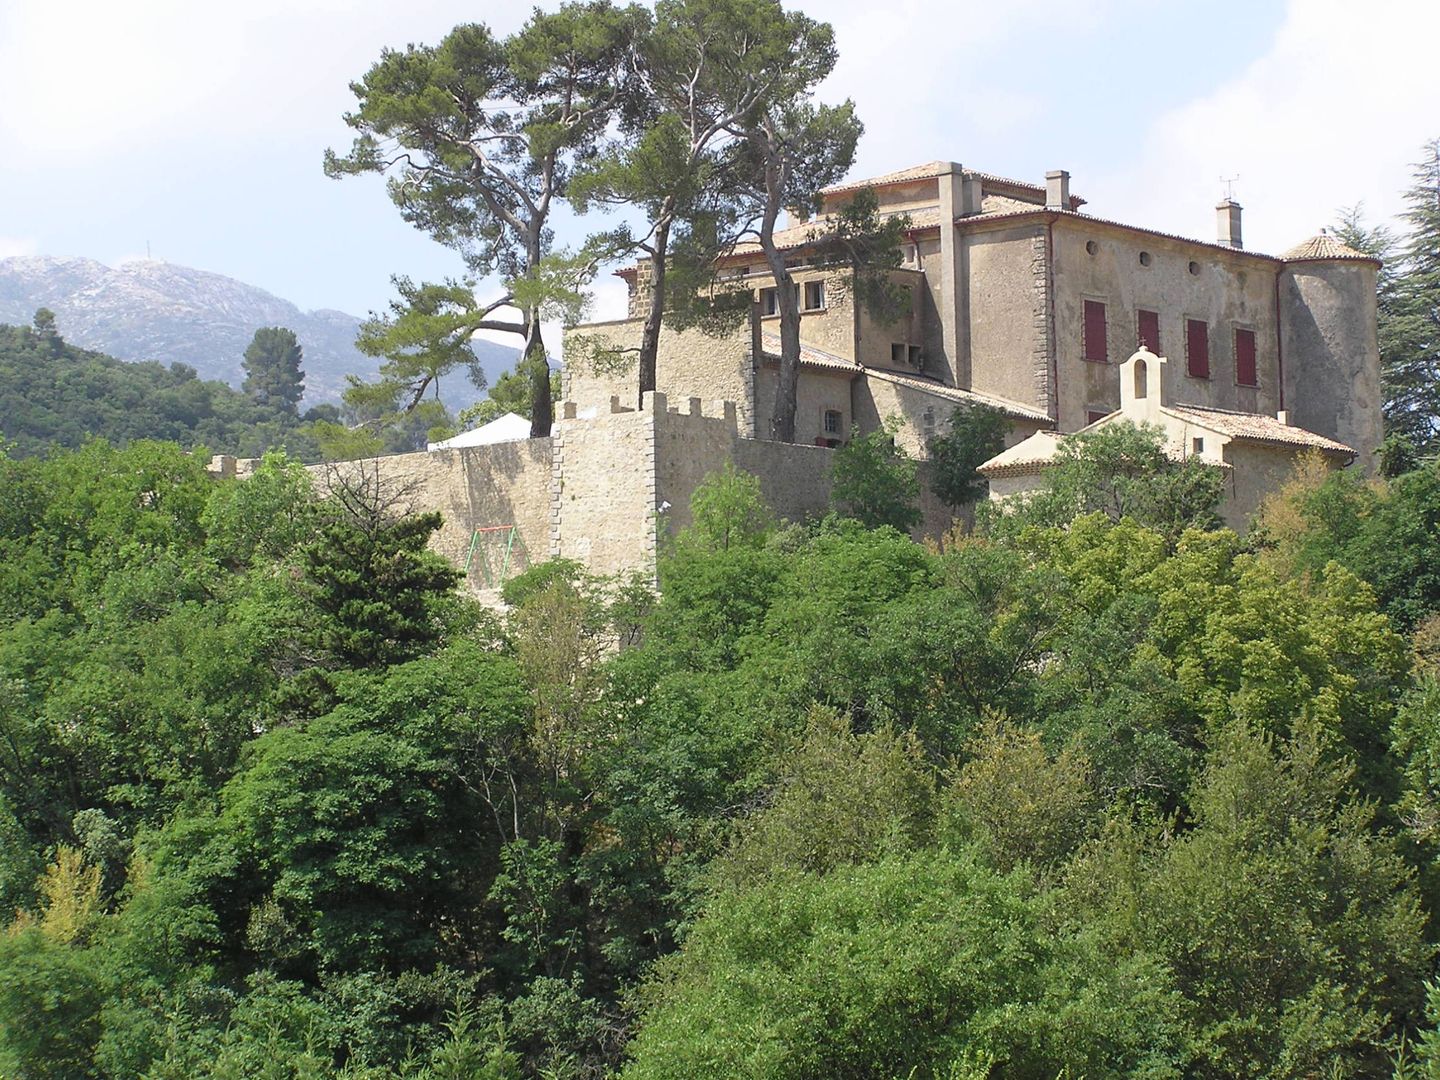 El castillo de Vauvenargues, propiedad de la familia Picasso.